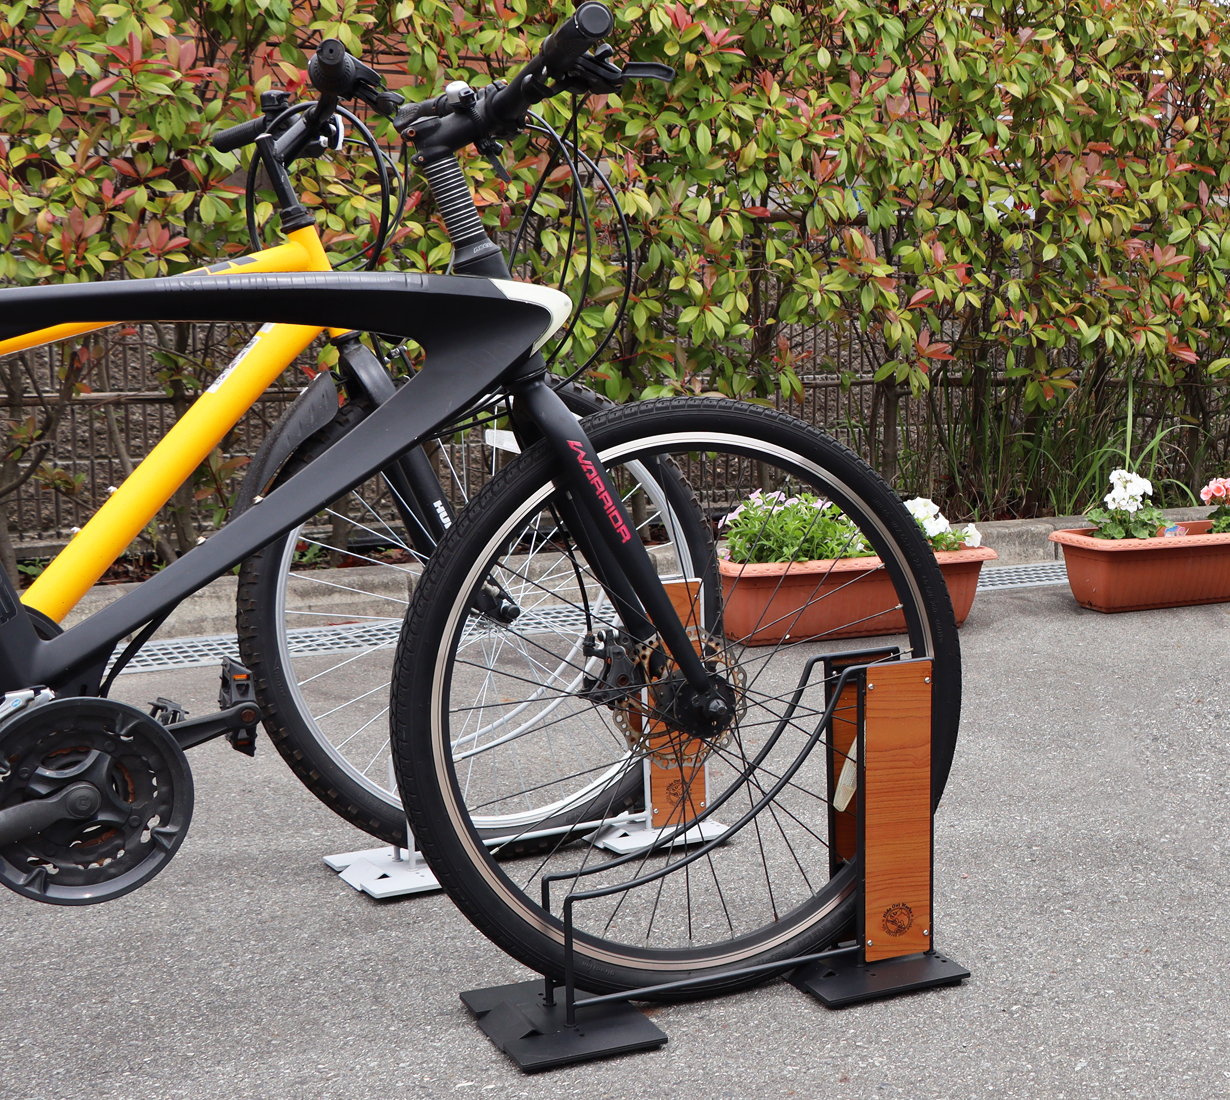 スチール 木目調デザインのオシャレな 自転車スタンド と 車止め の先行予約販売を Makuakeにて7月30日 金 まで実施 株式会社ヤマソロのプレスリリース